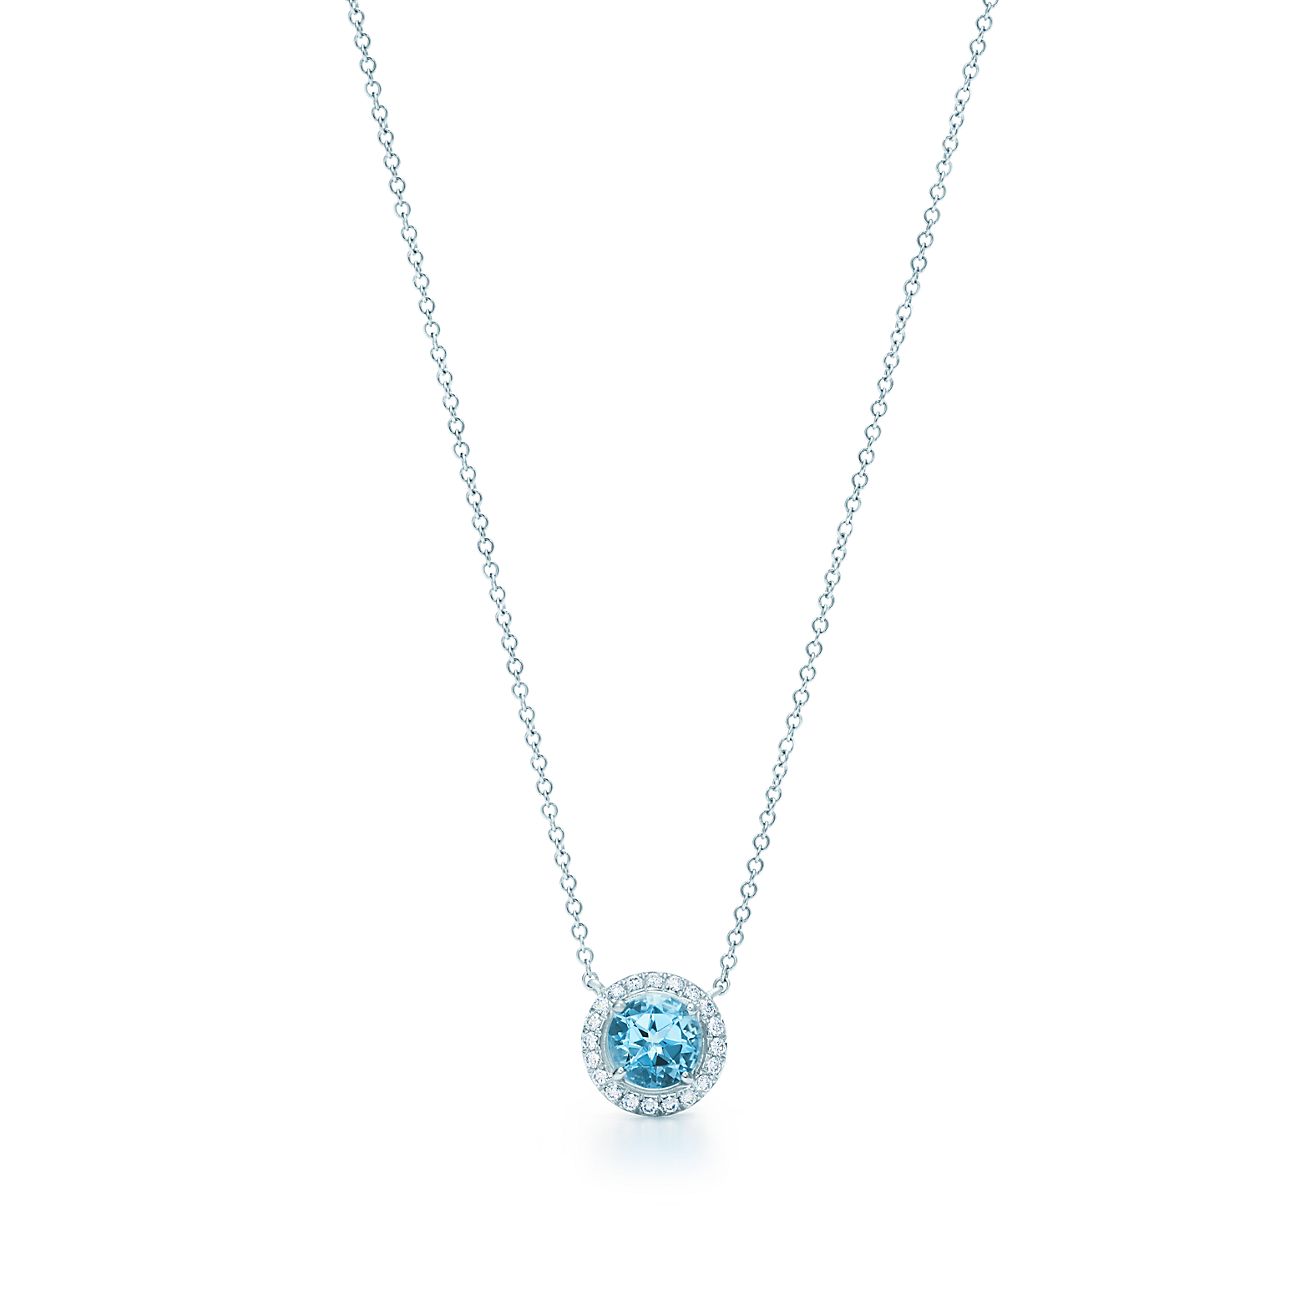 Soleste necklace aquamarine